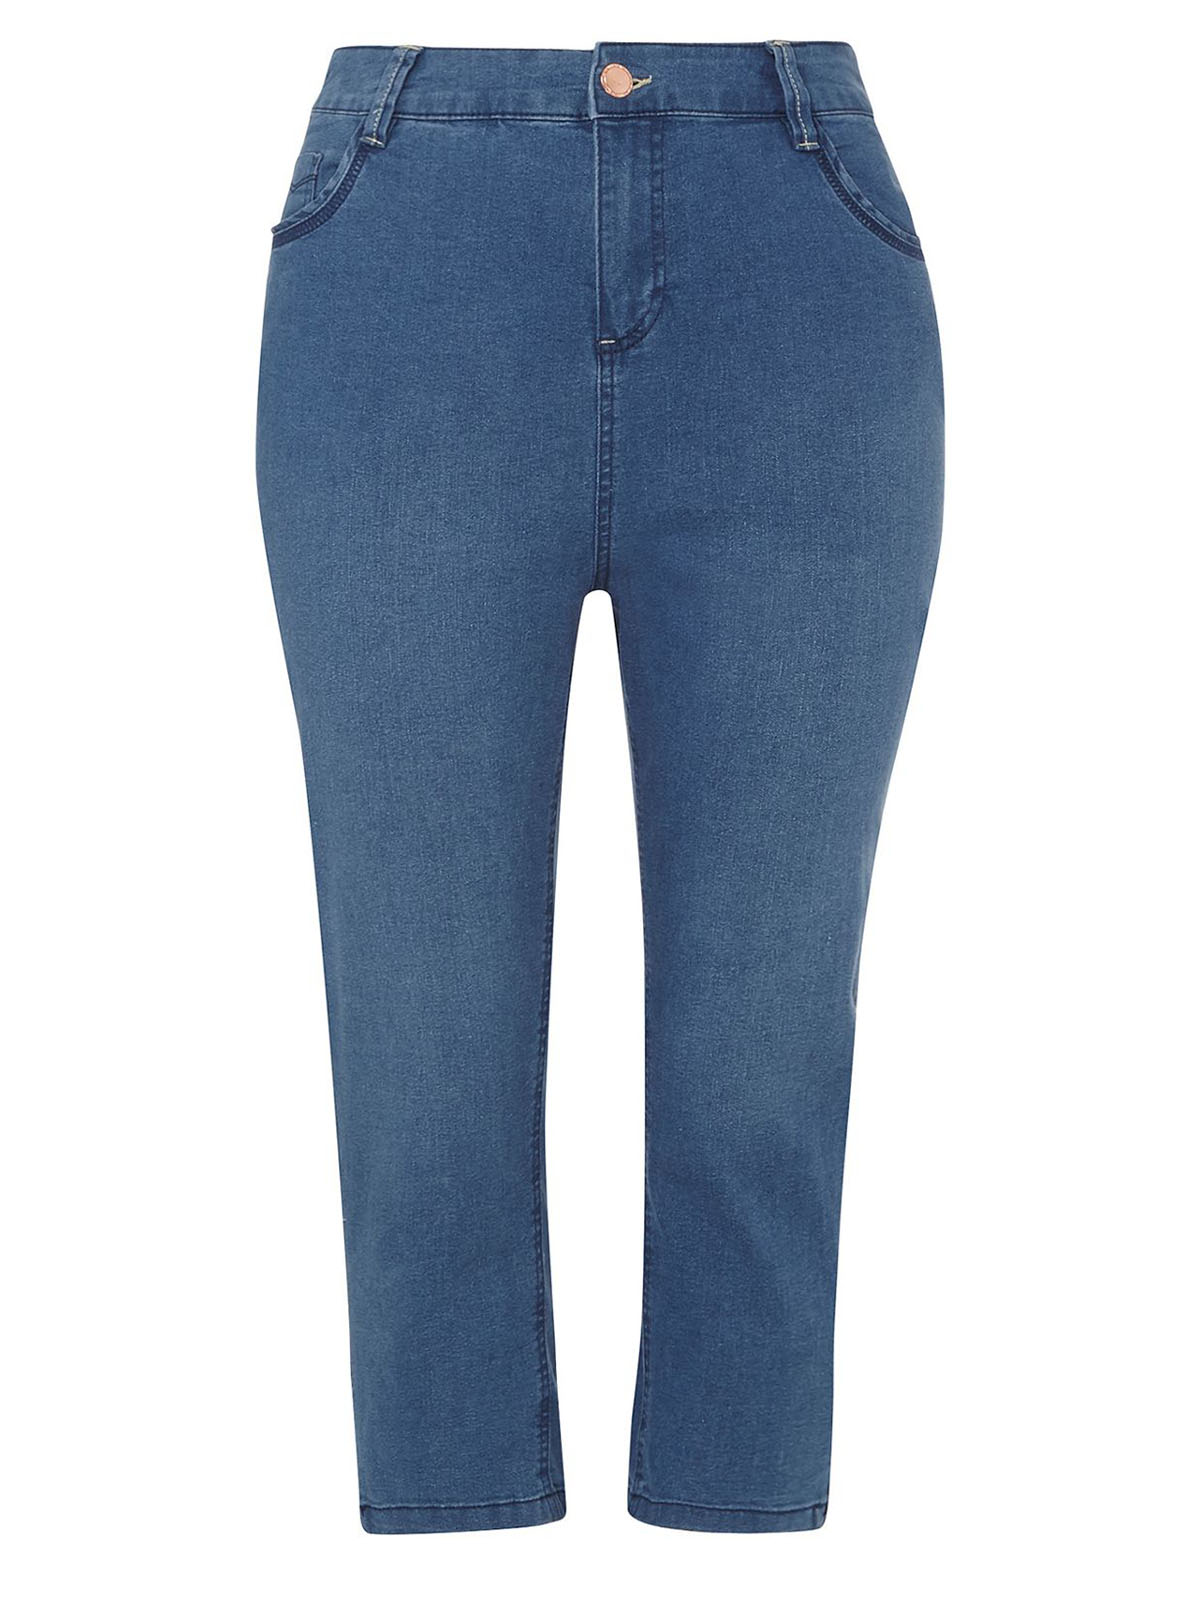 3VANS BLUE-DENIM Cropped Denim Jeans - Plus Size 14 to 32